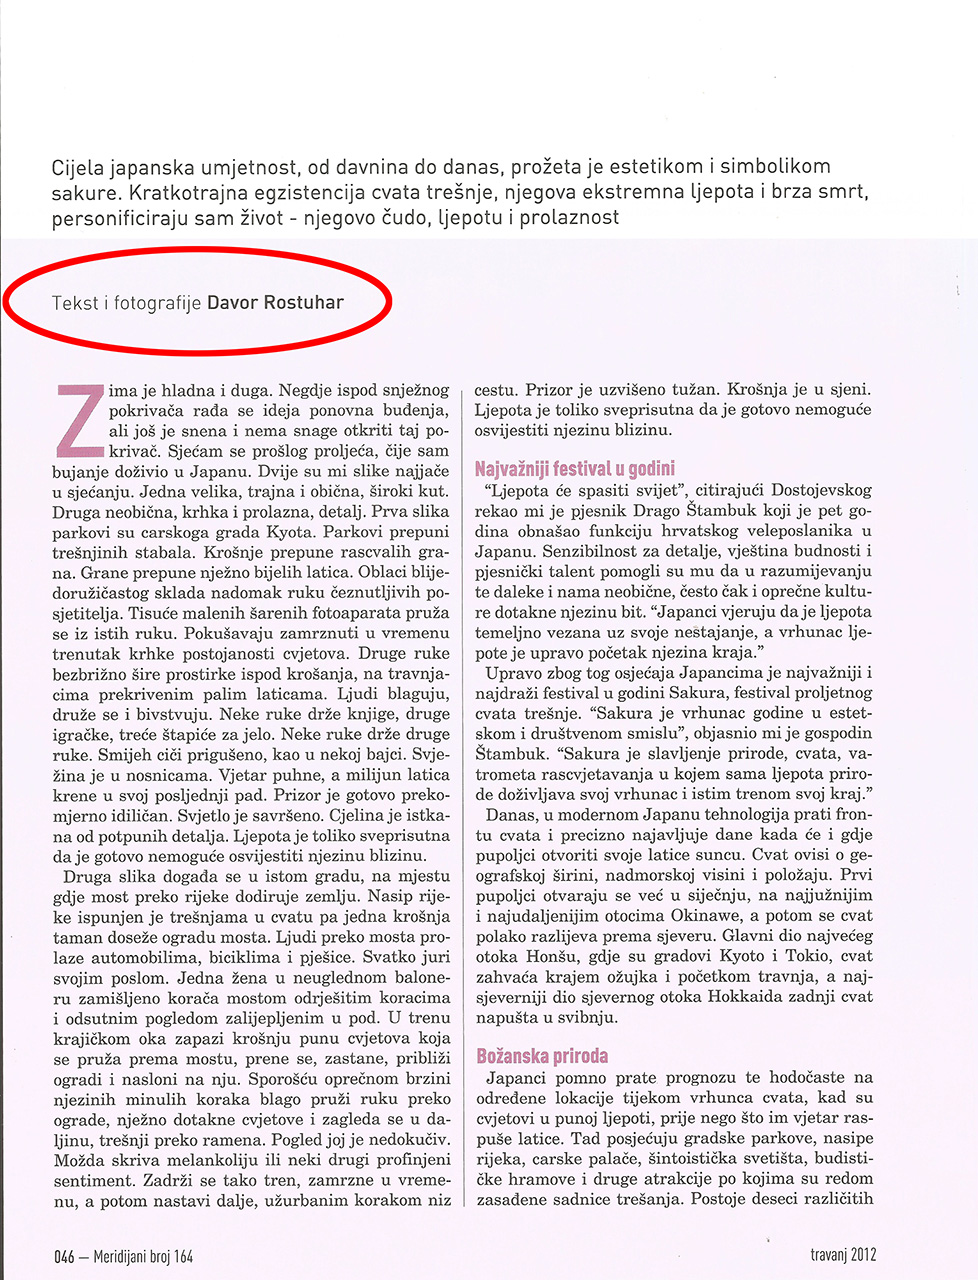 Prikaz stranice u časopisu Meridijani gdje je crvenom bojom zaokruženo ime autora teksta. 